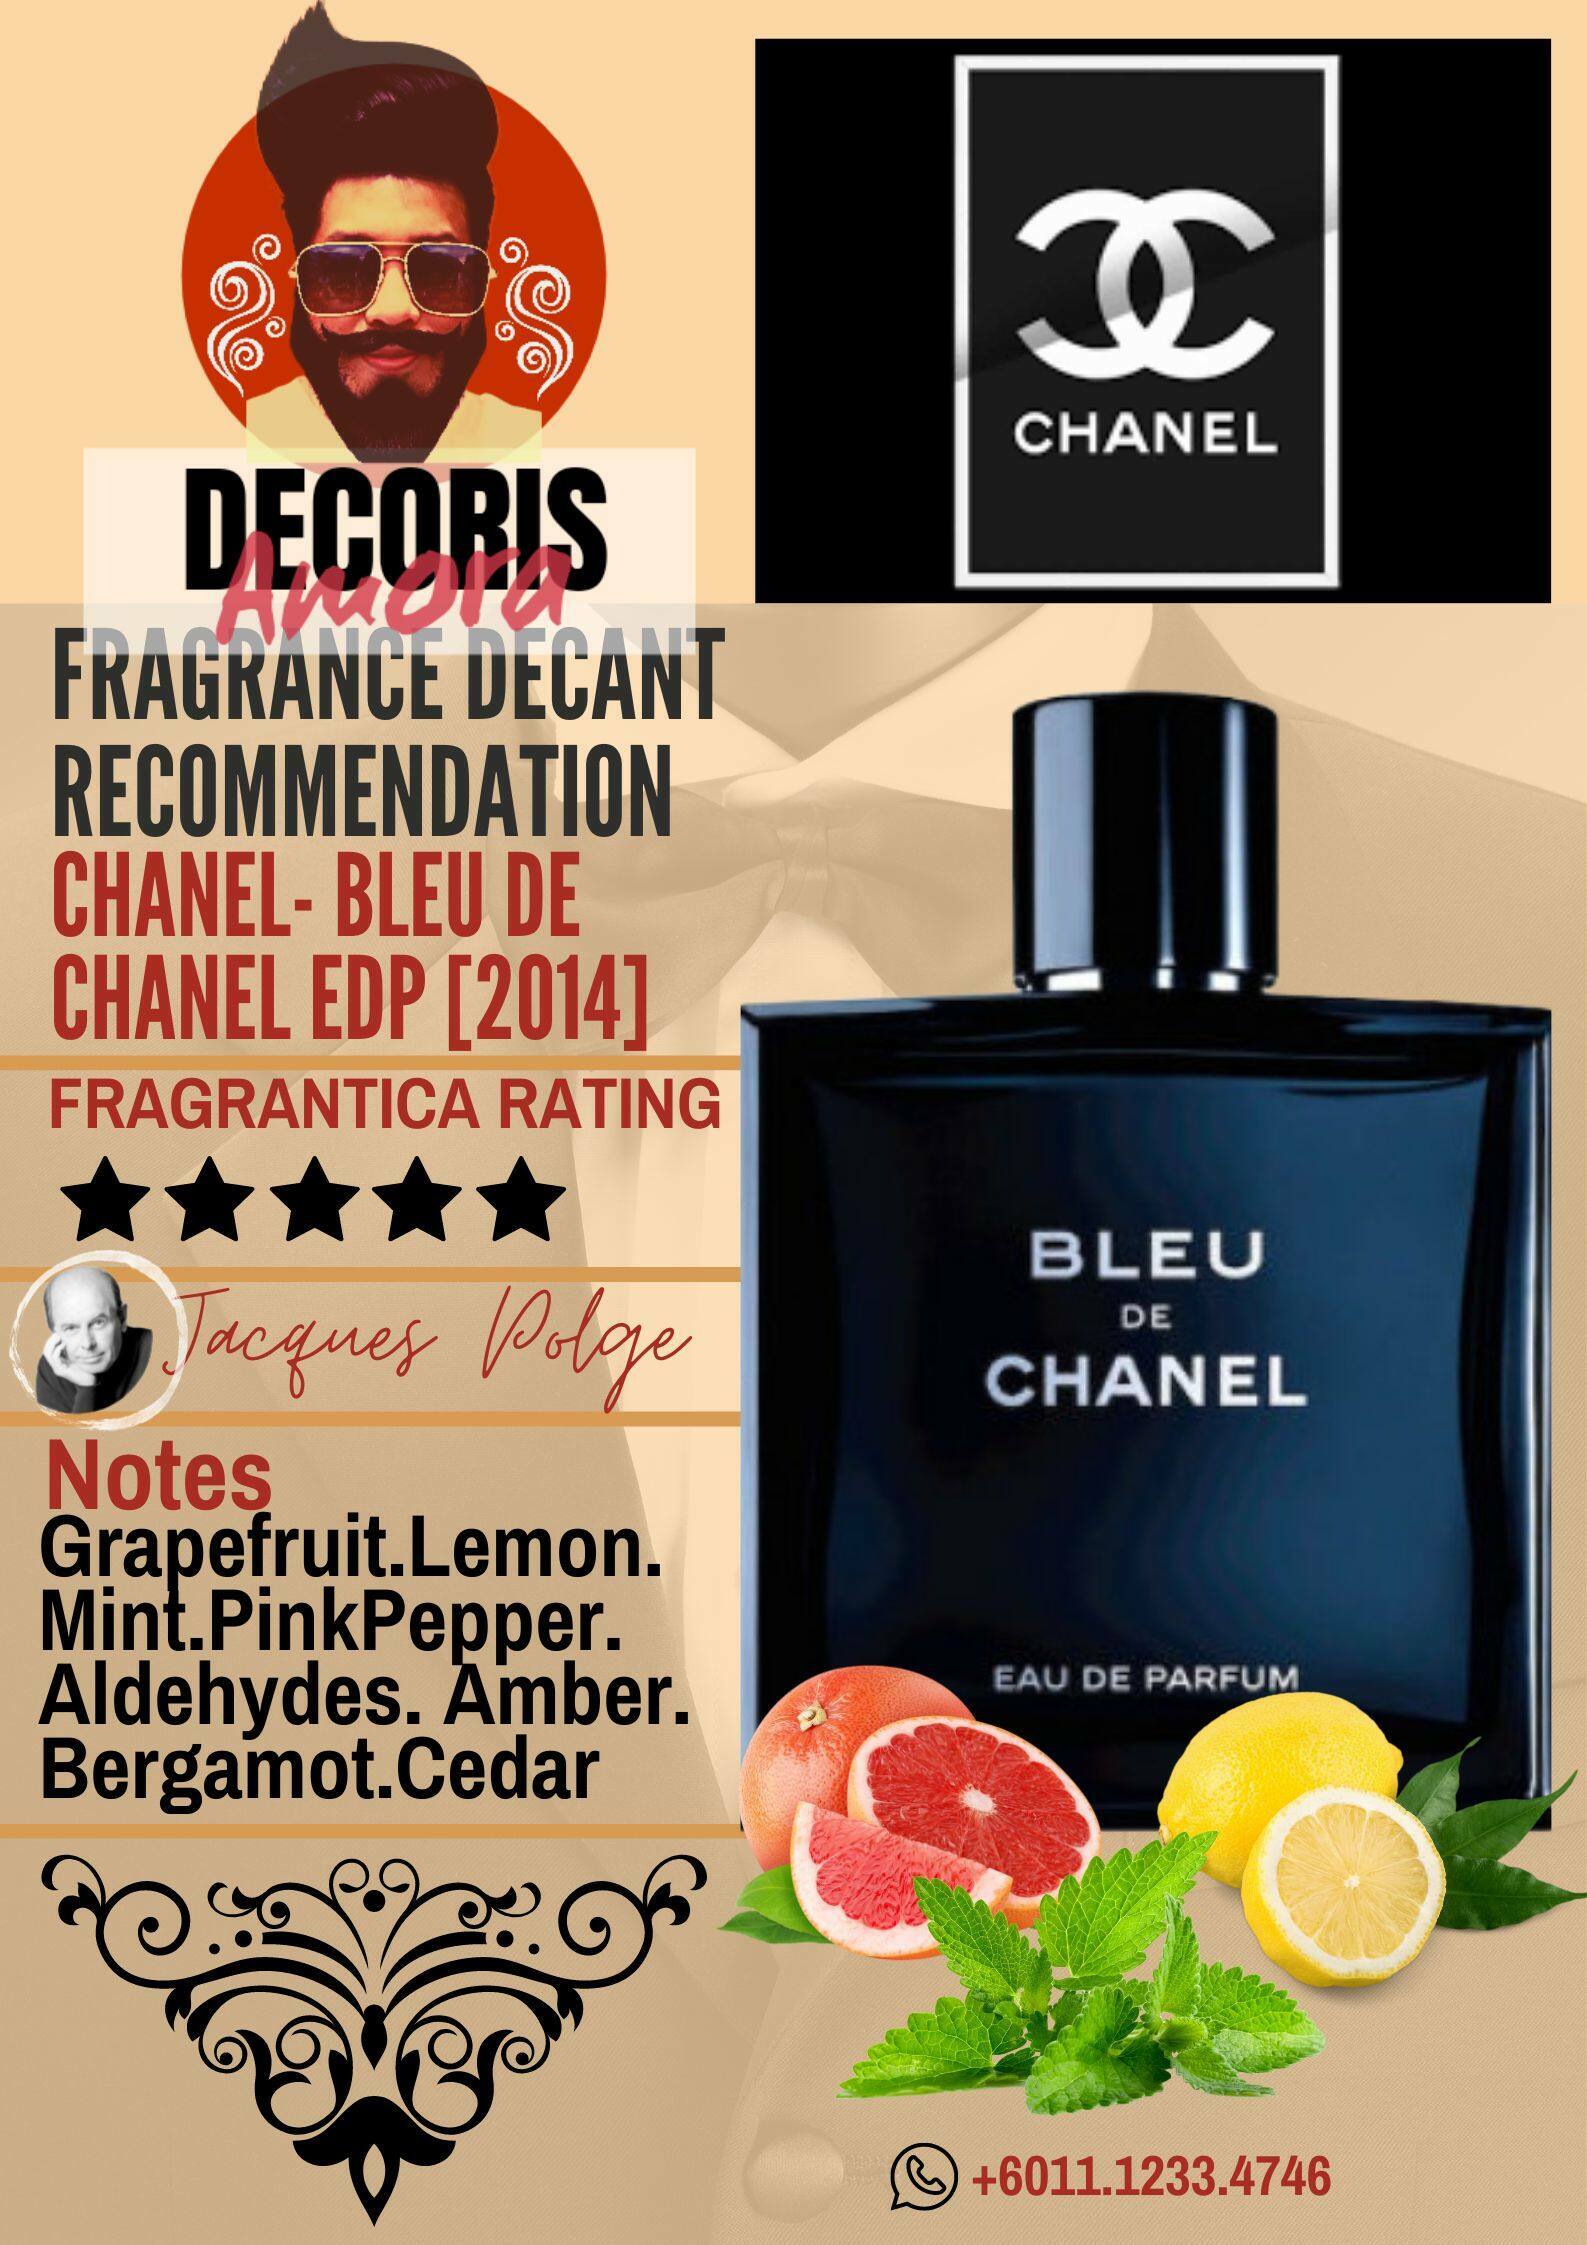 Chanel de Eau de Parfum - Perfume Decant – Decoris Amora Perfume Decant